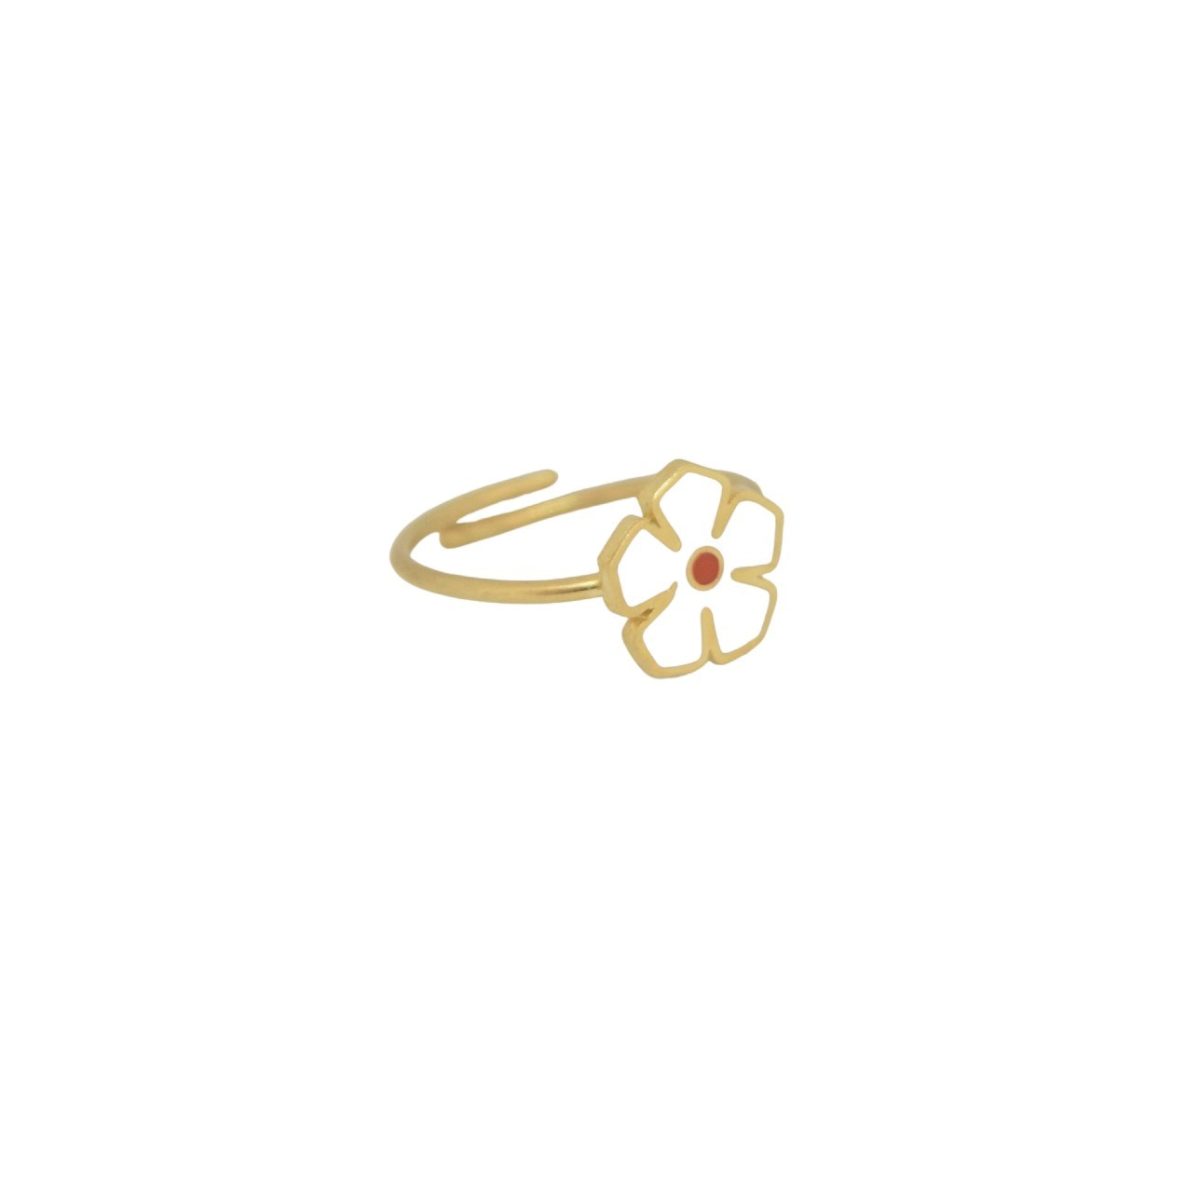 Flower gold plated ring Flower gold plated ring Flower gold plated ring 5